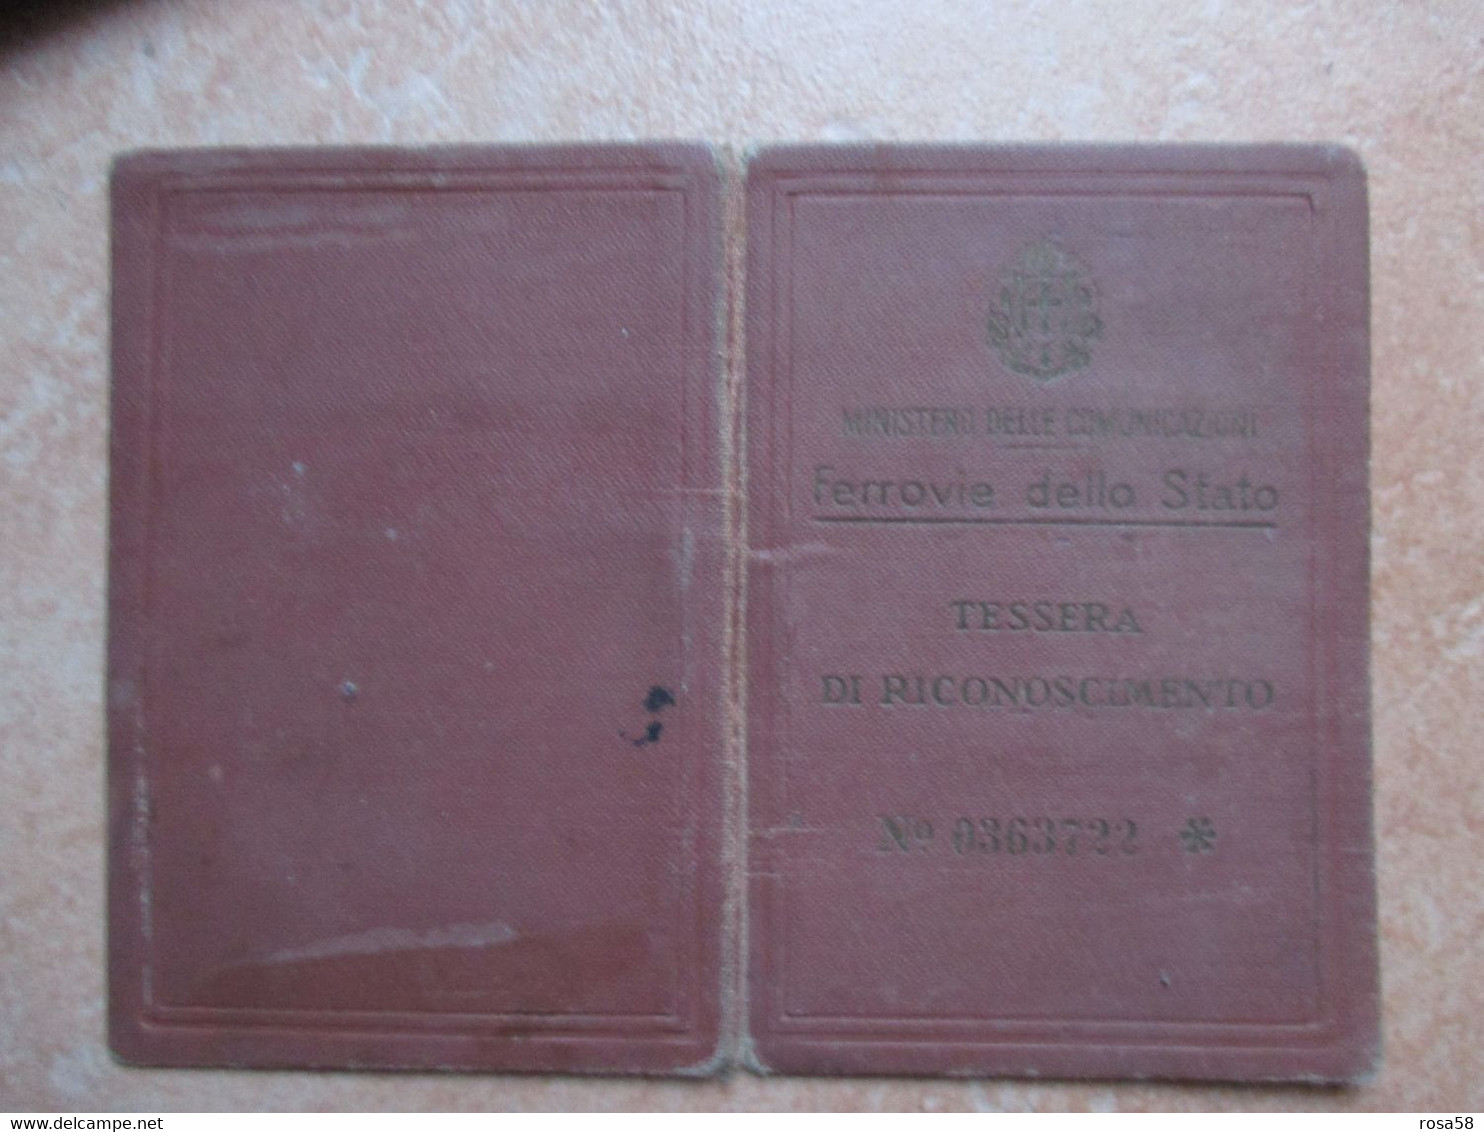 Italia TESSERA Riconoscimento Ferrovie Dello Stato Ministero Delle Comunicazioni 1935 Figlio Controllore - Europe